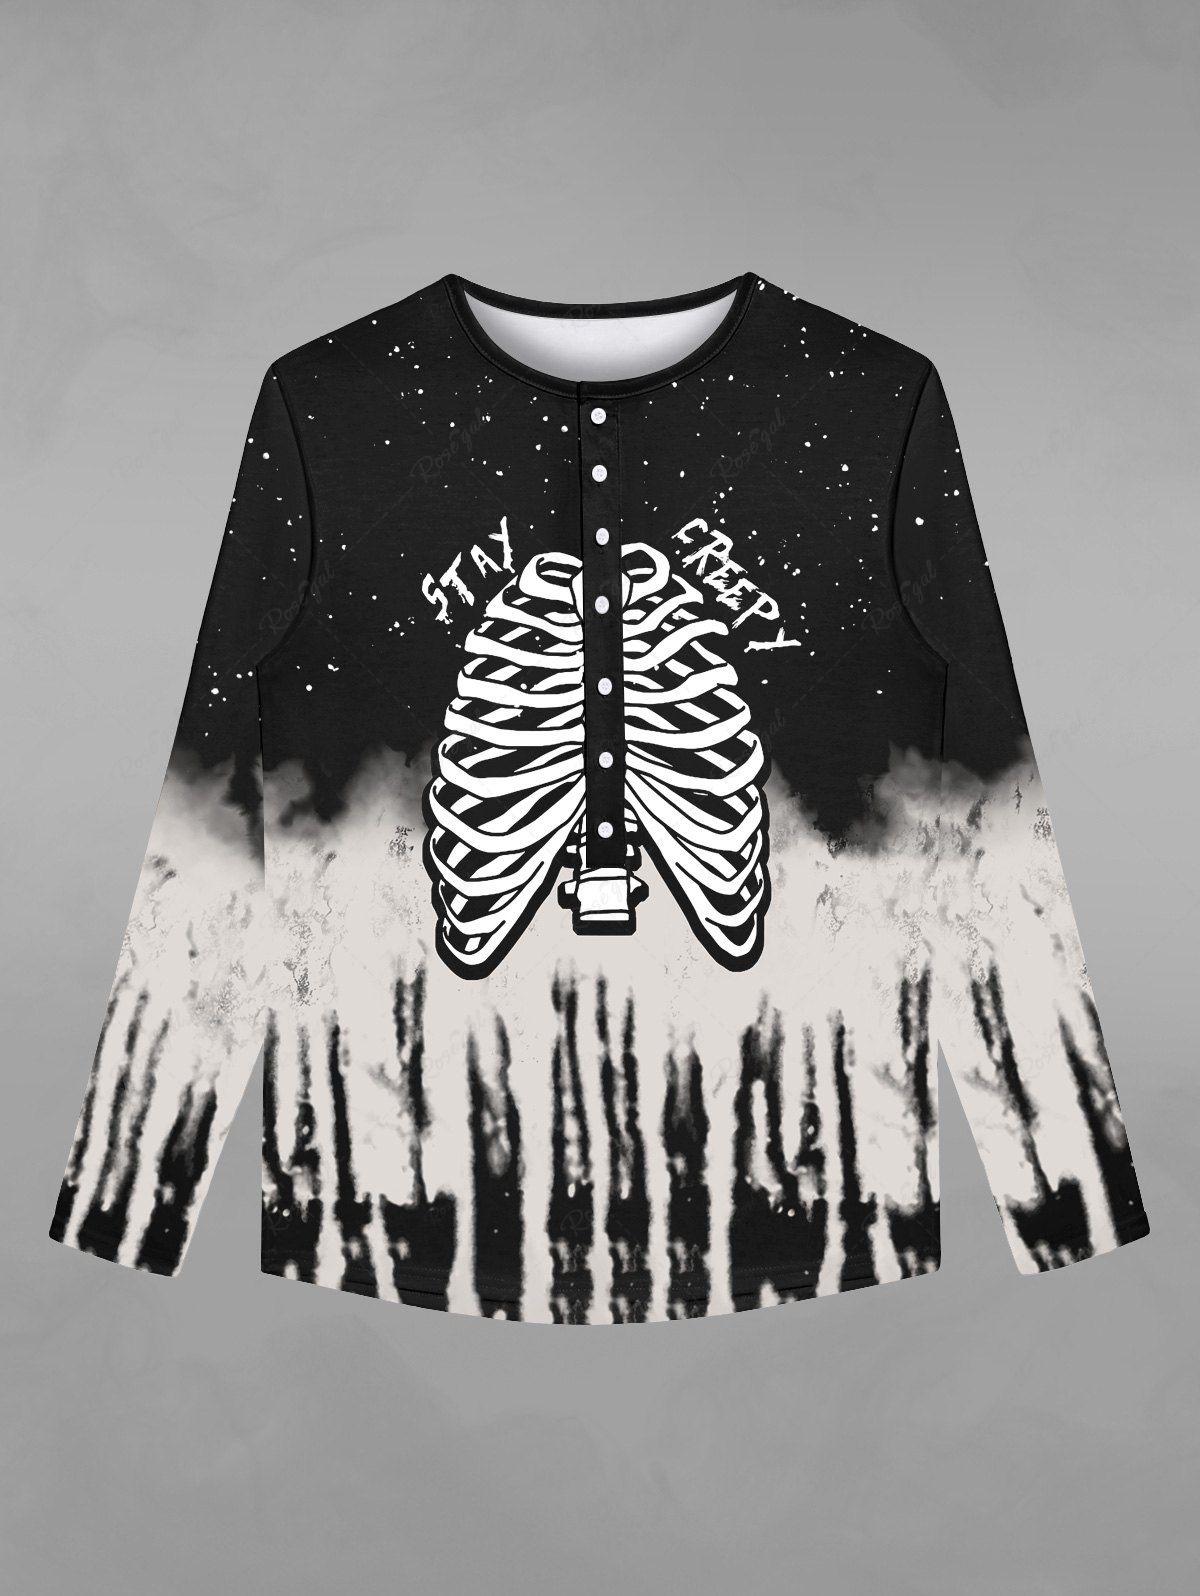 T-shirt D'Halloween Déchiré Gothique Squelette Galaxie Imprimés avec Boutons Noir 5XL